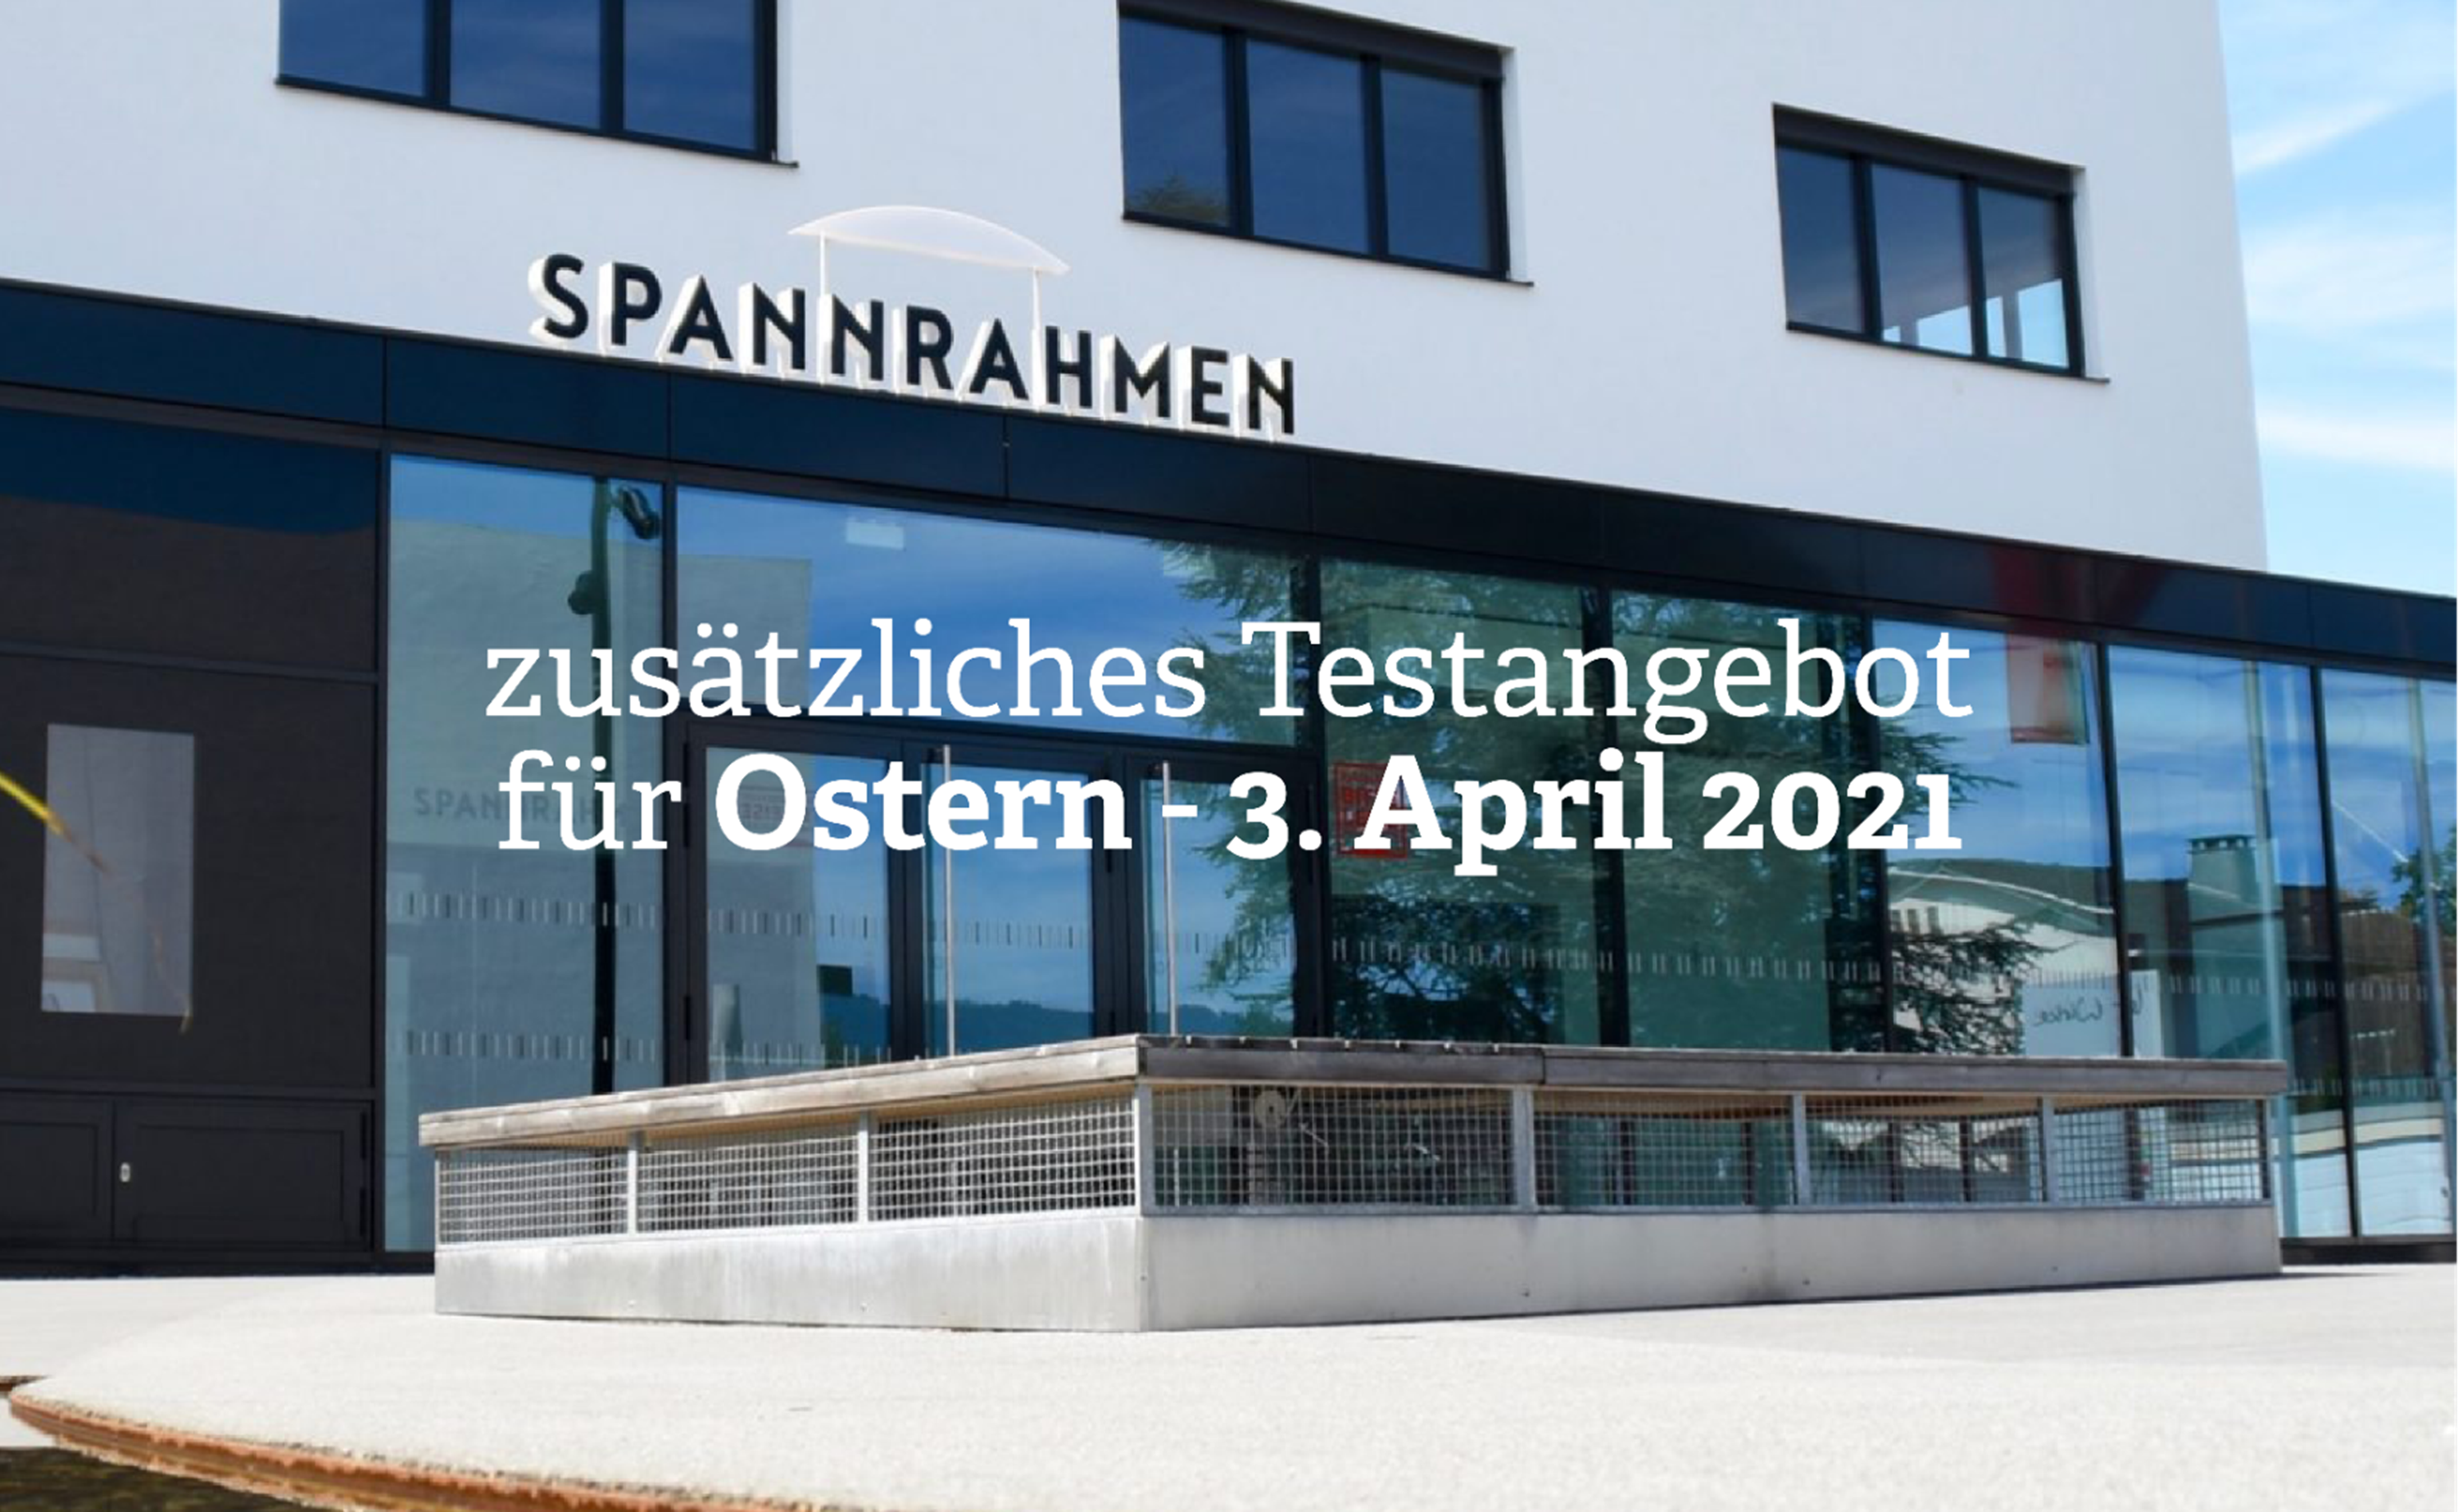 Zusätzliches Testangebot für "Nasenbohrertests" am 3. April 2021 im Spannrahmen Hard